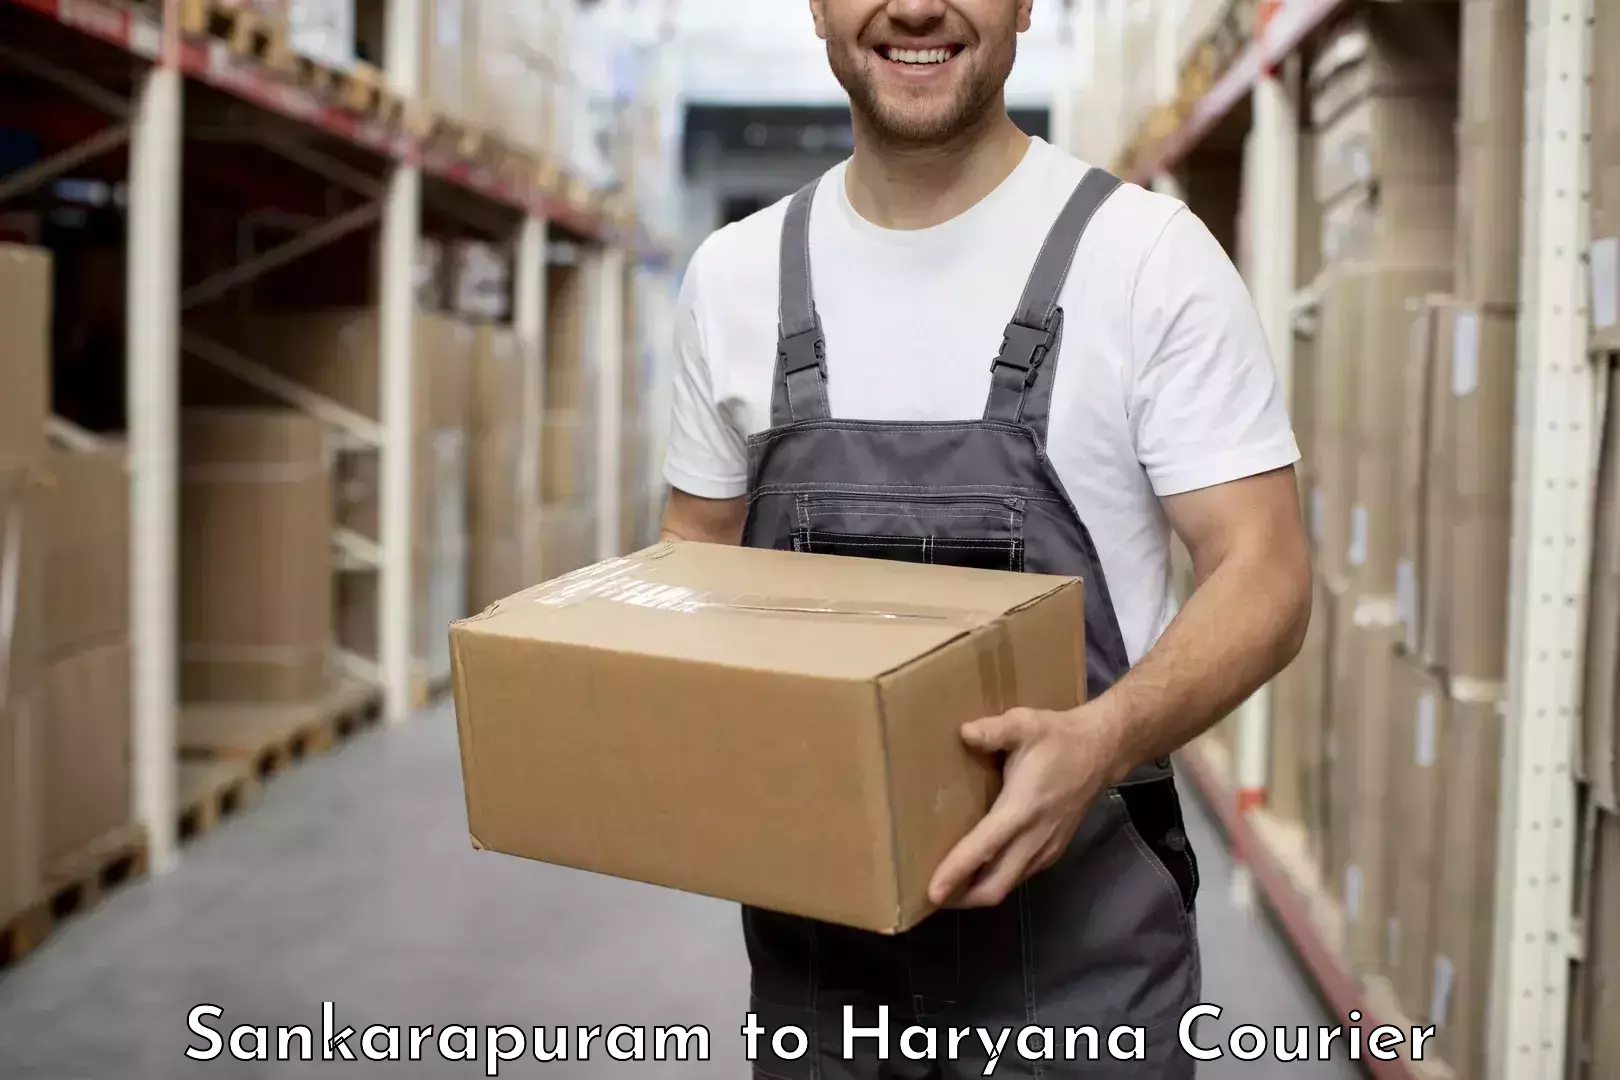 Urgent courier needs Sankarapuram to Haryana